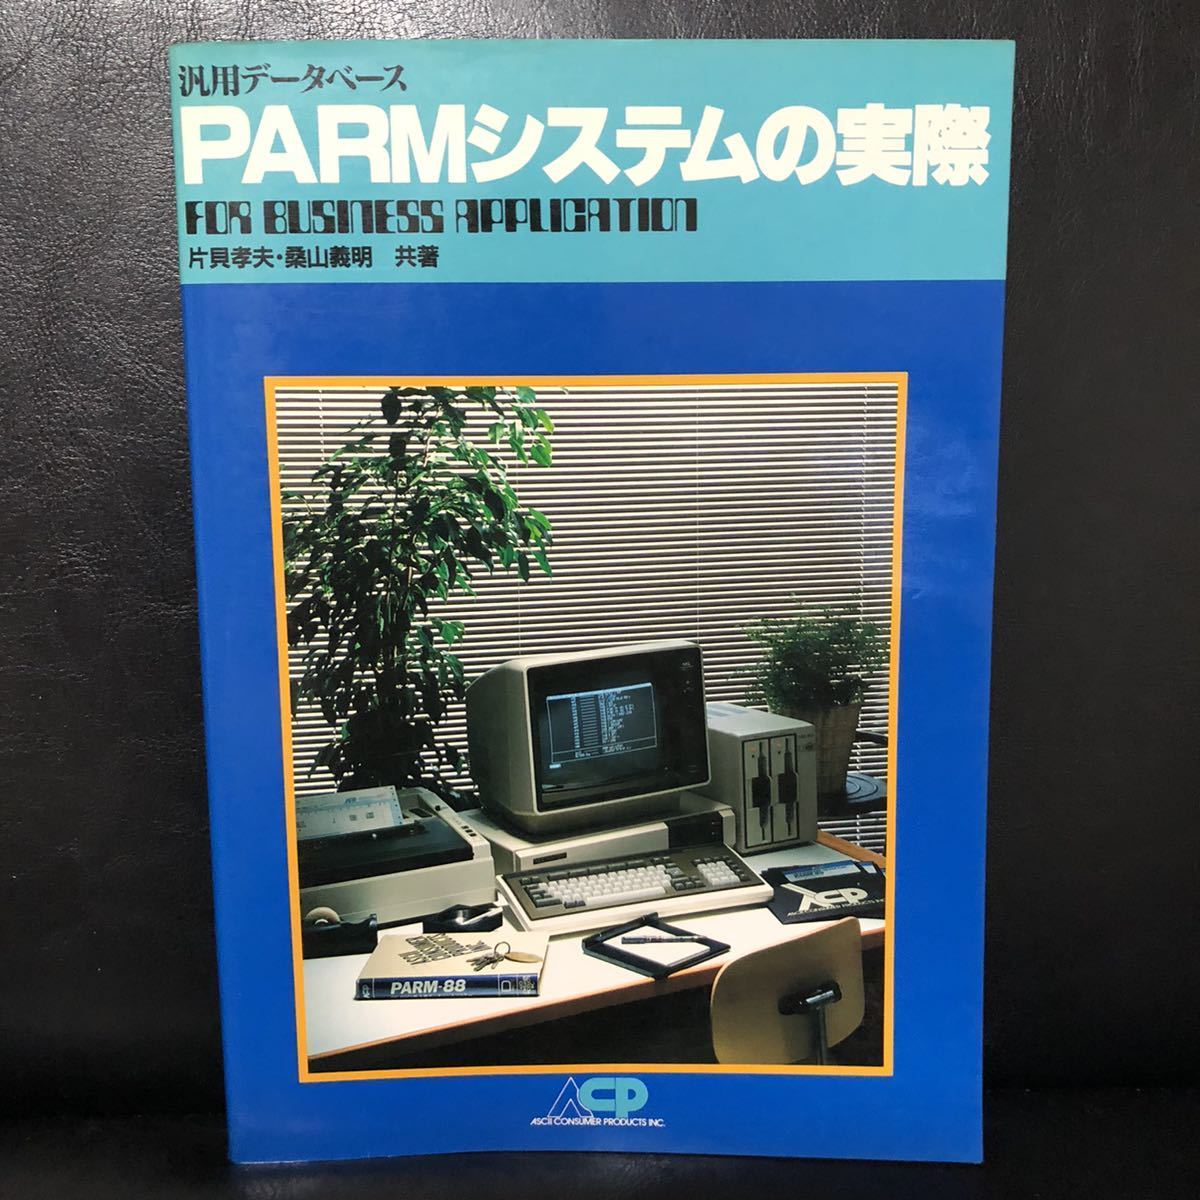 * быстрое решение универсальный база даннных PARM система. фактически /1982 год 10 месяц 1 день первая версия одна сторона .. Хара тутовик гора . Akira вместе . ASCII темно синий колодка ma Pro daktsu retro PC